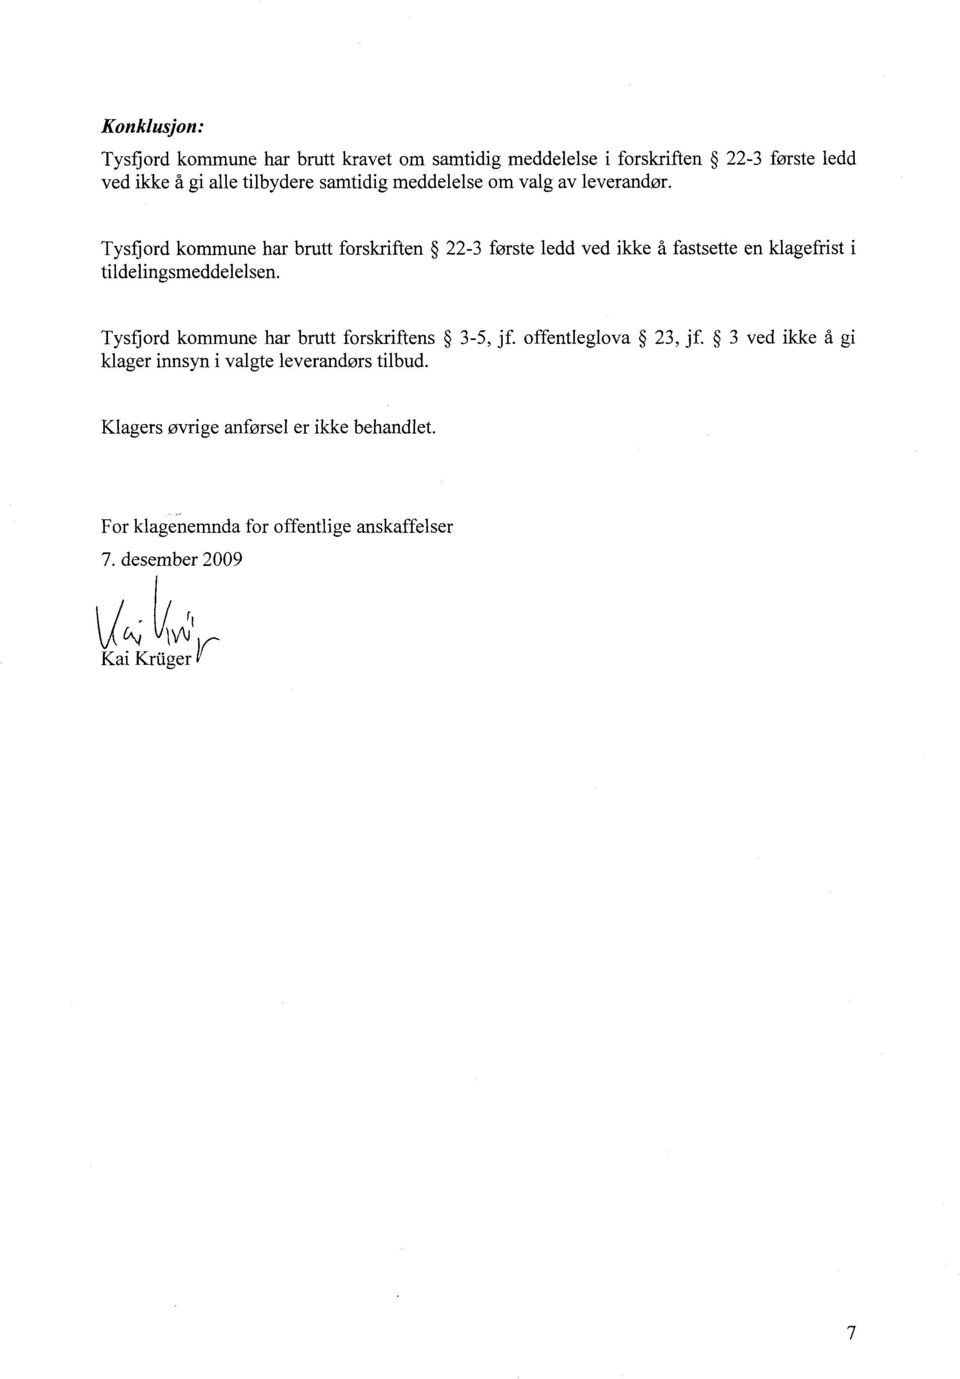 Tysfjord kommune har brutt forskriften 22-3 første ledd ved ikke å fastsette en klagefrist i tildelingsmeddelelsen.